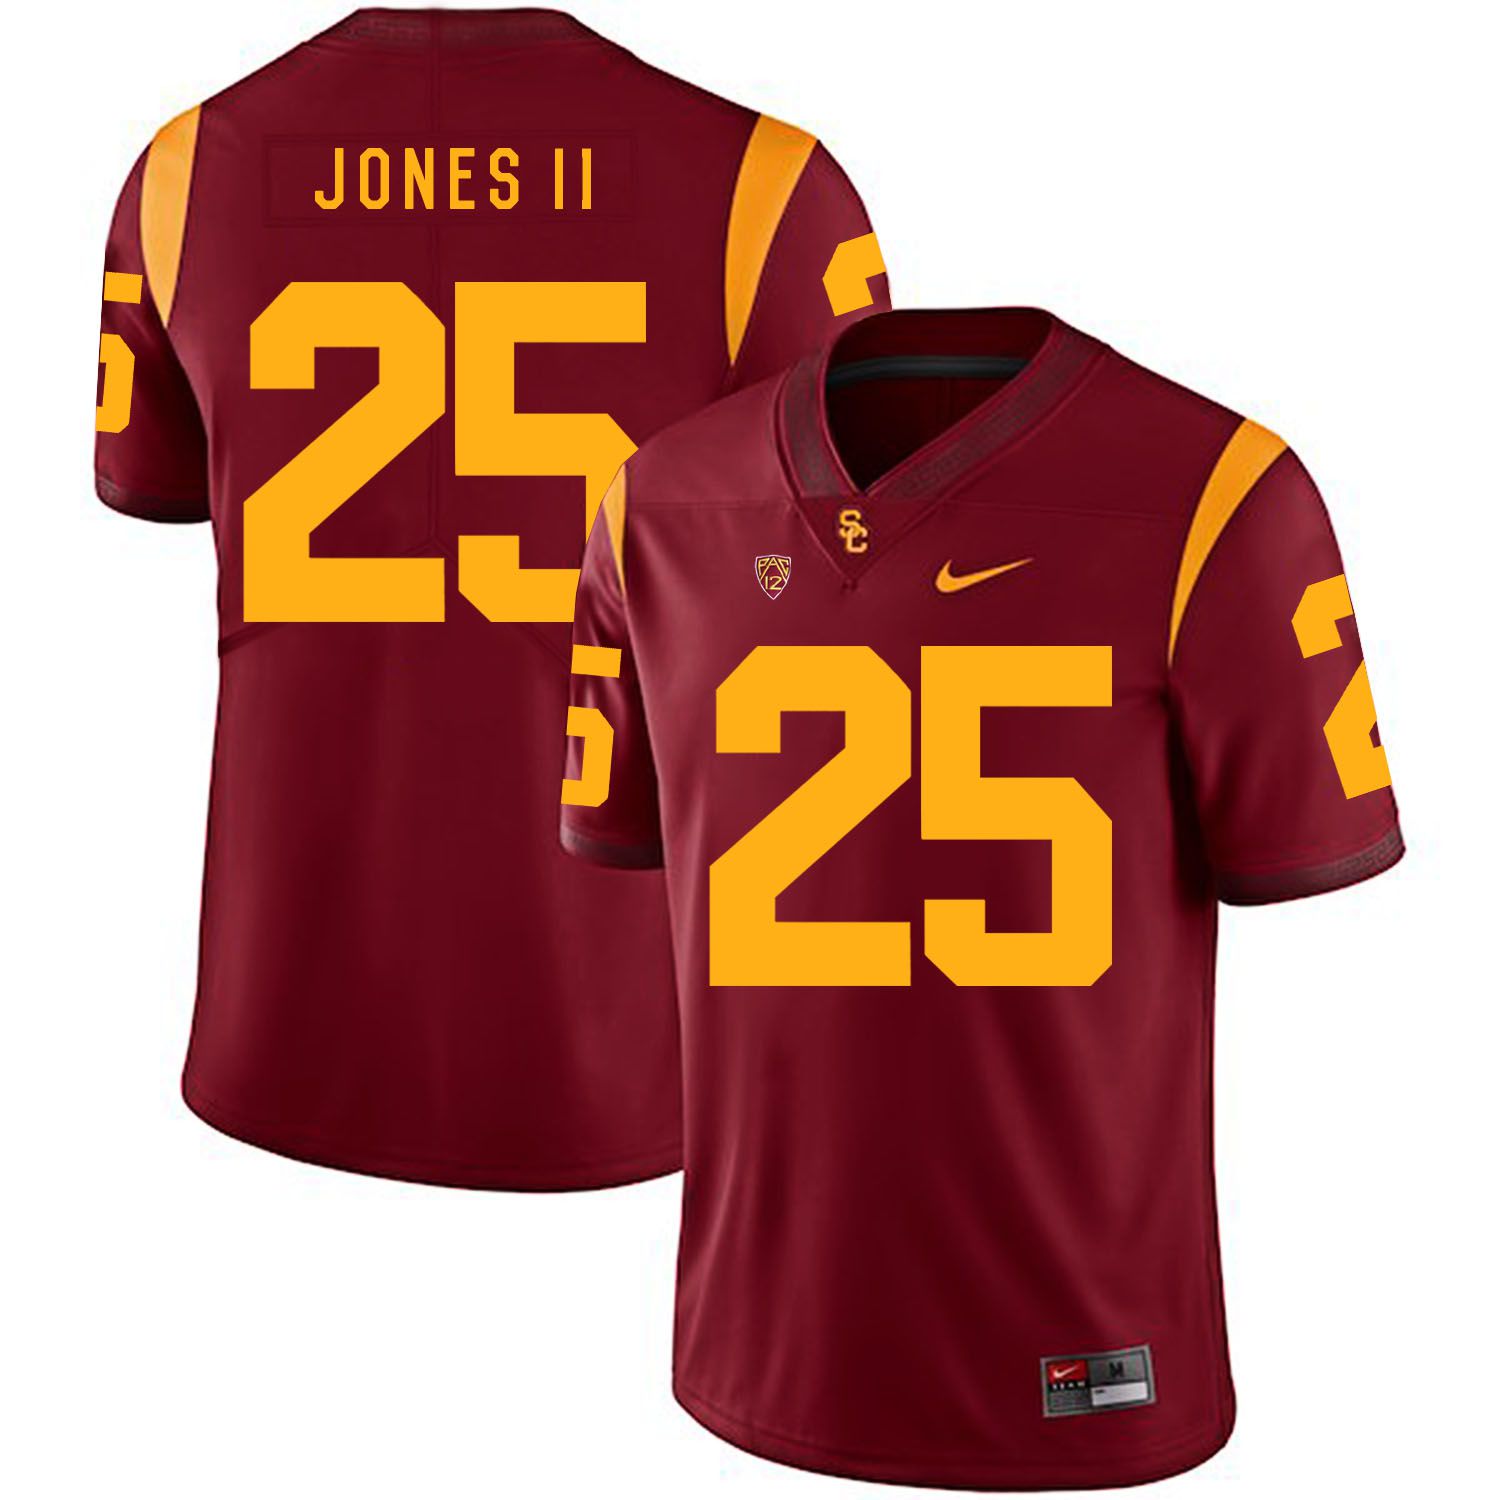 Men USC Trojans #25 Jones ii Red Customized NCAA Jerseys